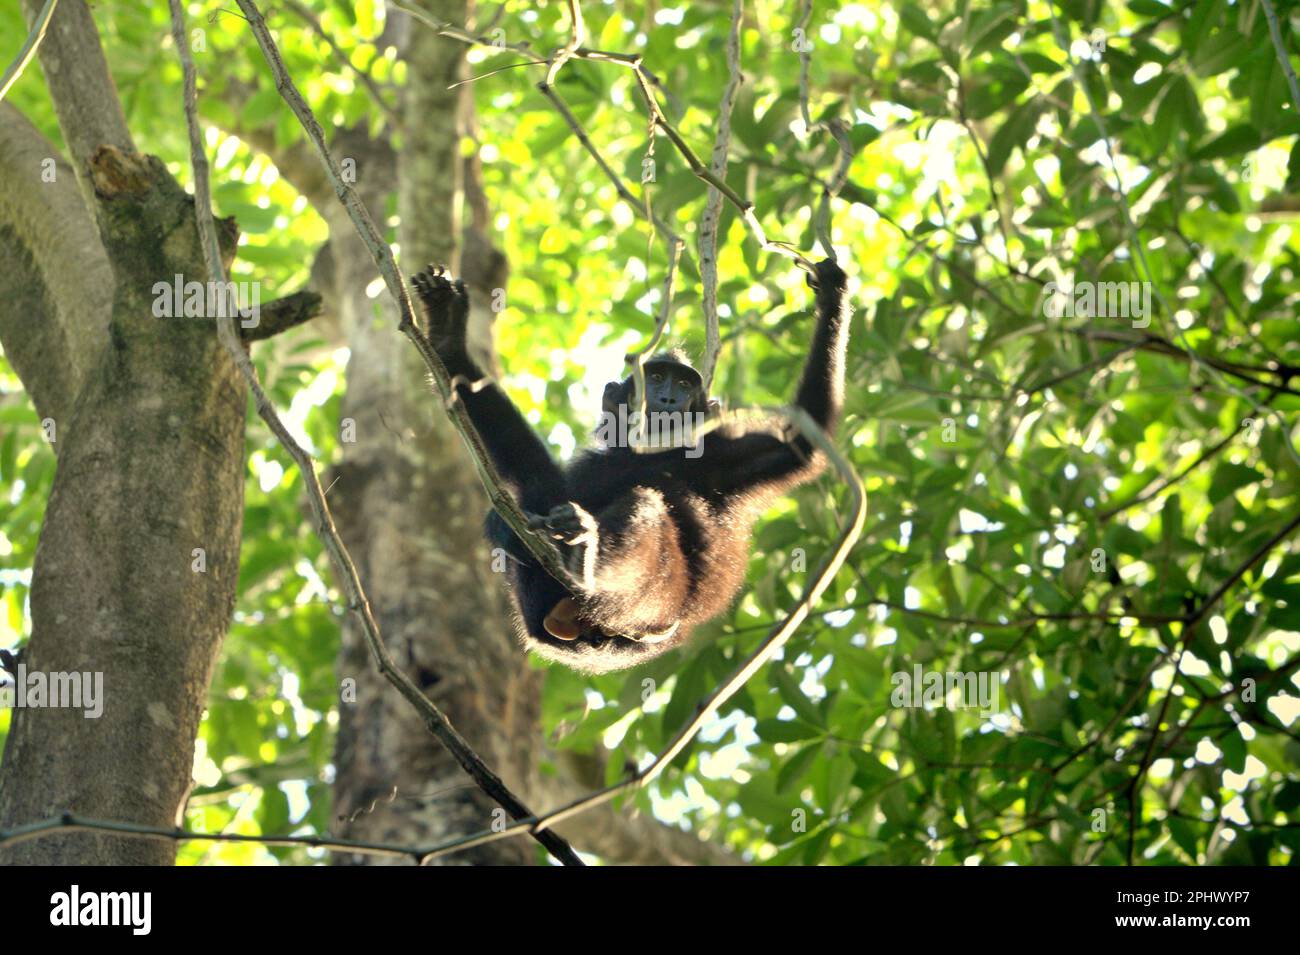 Eine Sulawesi-Schwarzkammmakake (Macaca nigra) bewegt sich auf einer Liana im Naturschutzgebiet Tangkoko, North Sulawesi, Indonesien. Über Macaca Nigra Project und andere sind Forschungsteams über mehrere Jahrzehnte in das Tangkoko Reserve gekommen, ein relativ sicherer Lebensraum, um diese Art zu studieren, laut einer Zusammenfassung der wissenschaftlichen Forschungspapiere vom März 2023, die von einem Team von Primaten Wissenschaftlern unter der Leitung von Jatna Supriatna herausgegeben wird (Zugriff über Springer). Als eine der sieben auf der Insel Sulawesi endemischen Makaken ist die Makaken (Macaca nigra) eine sozial tolerante Primatenart. Stockfoto